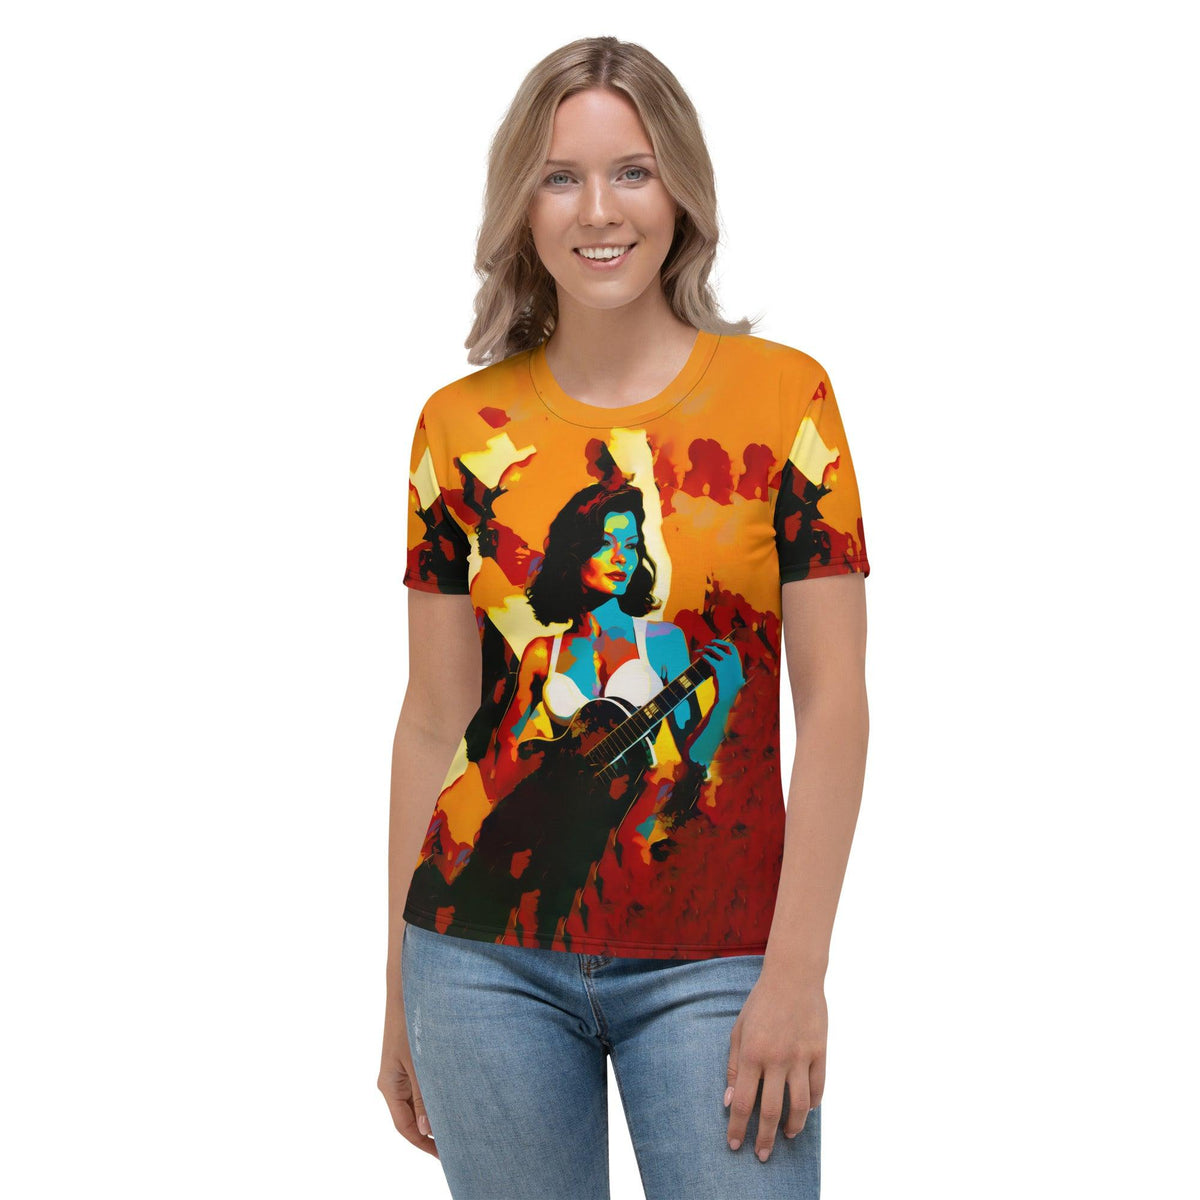 SurArt 77 Women's T-shirt - Beyond T-shirts